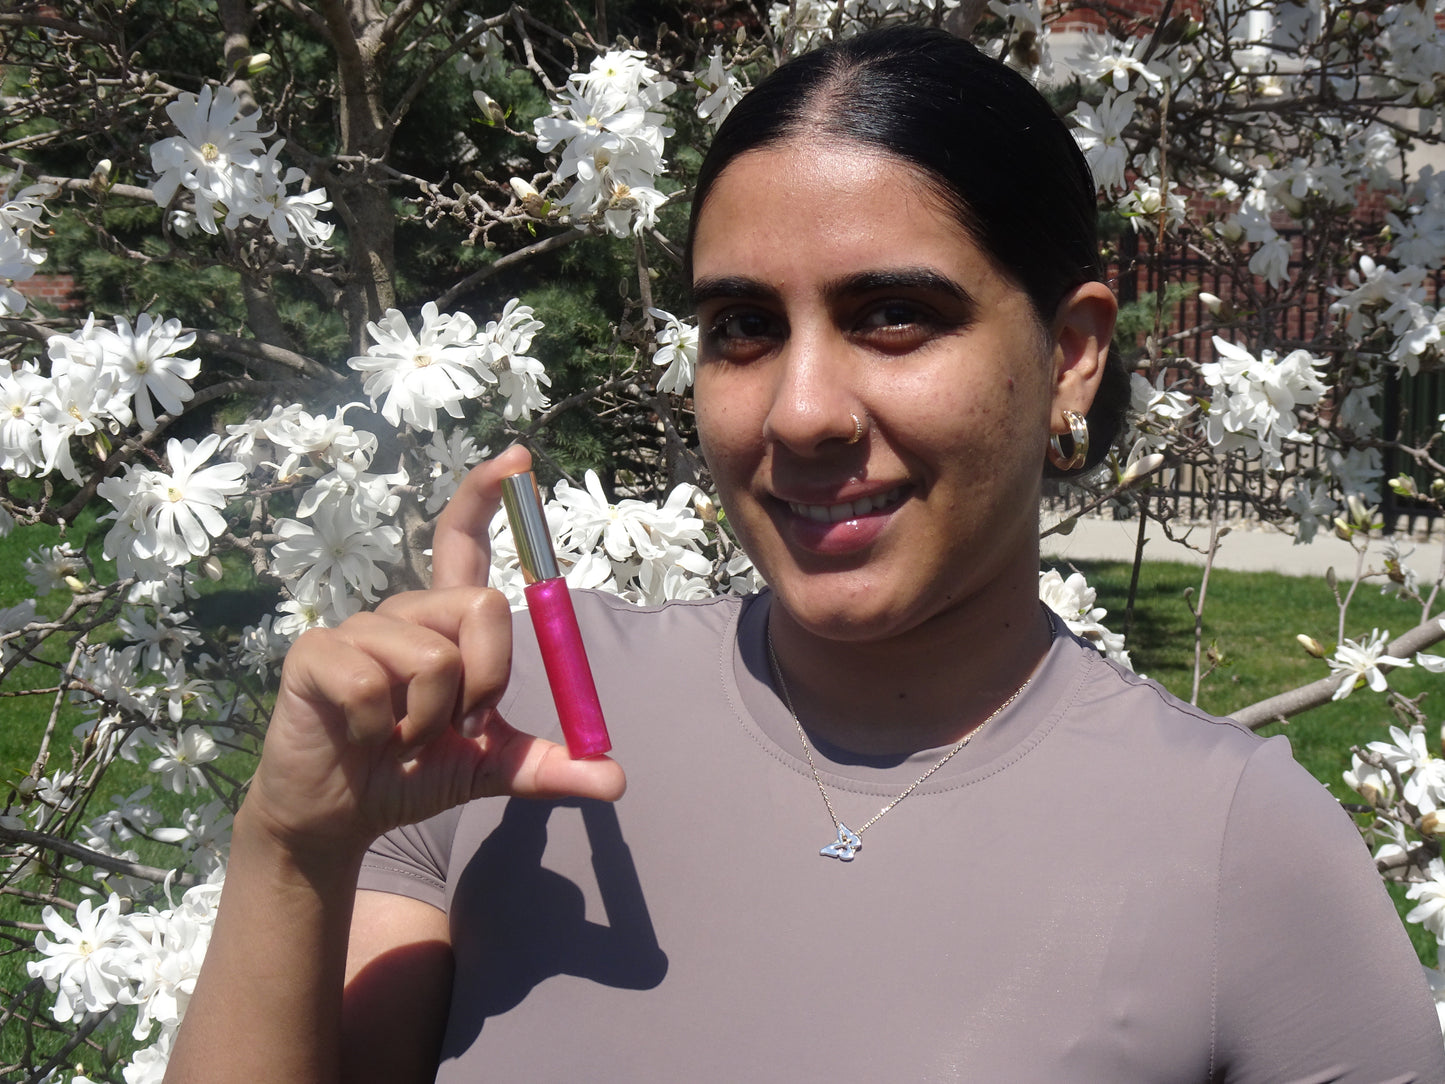 Maximum Magenta - Brillo iluminador Lip Pop | Rosa Mosqueta X Vitamina E